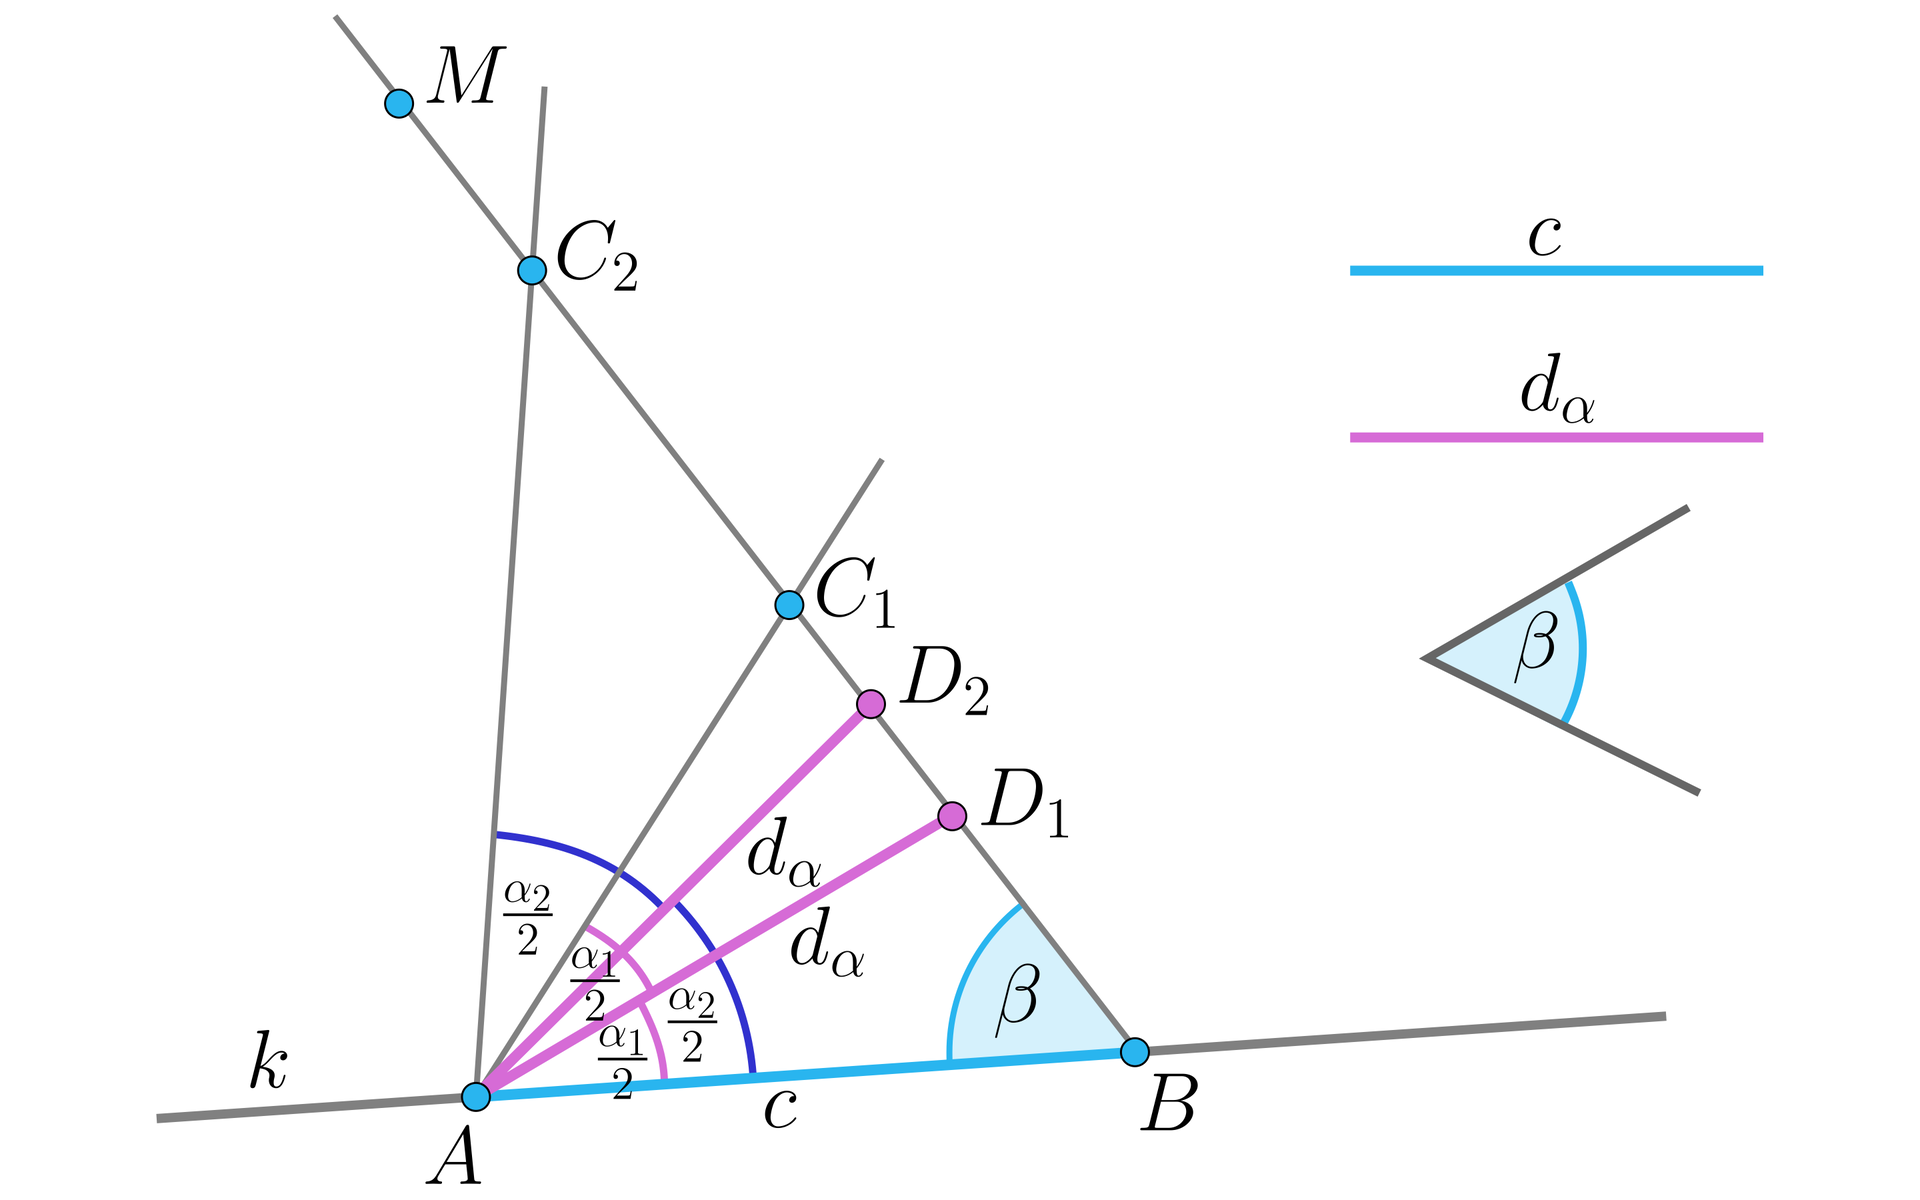 W prawej górnej części rysunku poglądowo narysowano odcinek c, poniżej odcinek dα, a poniżej kąt β. W zasadniczej części rysunku (lewa i środkowa część) przedstawiono ukośną prostą k, na której zaznaczono punkt A. Na prostej k odłożono odcinek AB o długości c, który wyróżniono kolorem. Następnie odłożono kąt ABM o rozwartości β i zakreślono łuk okręgu o środku w punkcie A i promieniu równym dα tak, że przeciął on półprostą BM w punktach D1 i D2. Następnie odłożono kąt D1AC1 równy kątowi D1AB oraz kąt D2AC2 równy kątowi D2AB. Na rysunku zaznaczono miary poszczególnych kątów. Kąty C2AD2 oraz D2AB mają miarę α22. Kąty C1AD1 oraz D1AB mają miarę α12. Na rysunku kolorem wyróżniono dwa odcinki o długości dα wyznaczające kąt D2AD1. Trójkąty ABC1 oraz ABC2 to rozwiązania naszej konstrukcji.